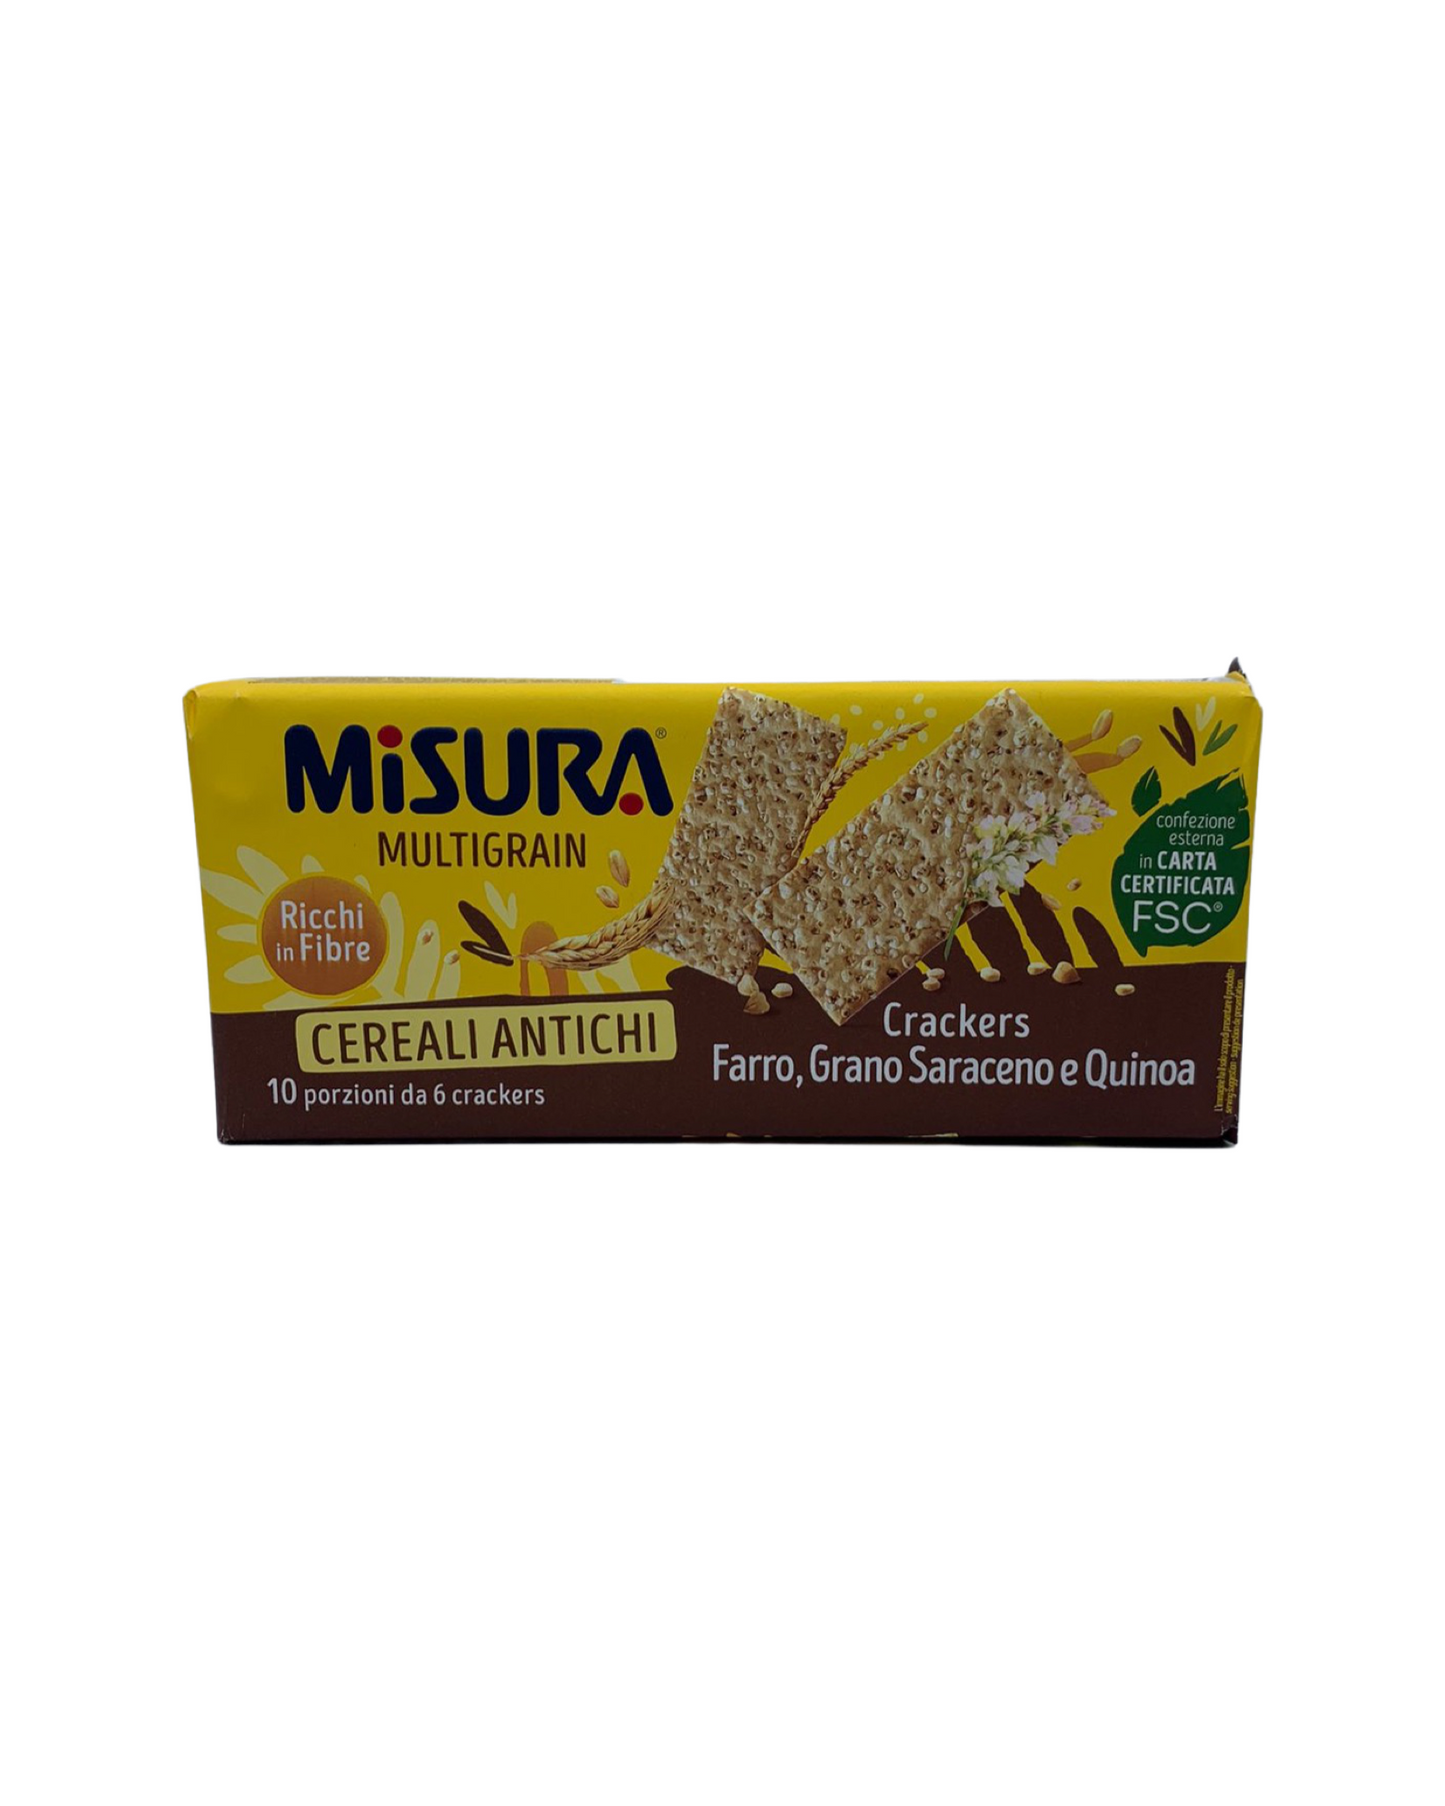 Multigrain ancient cereal cracker (350g)